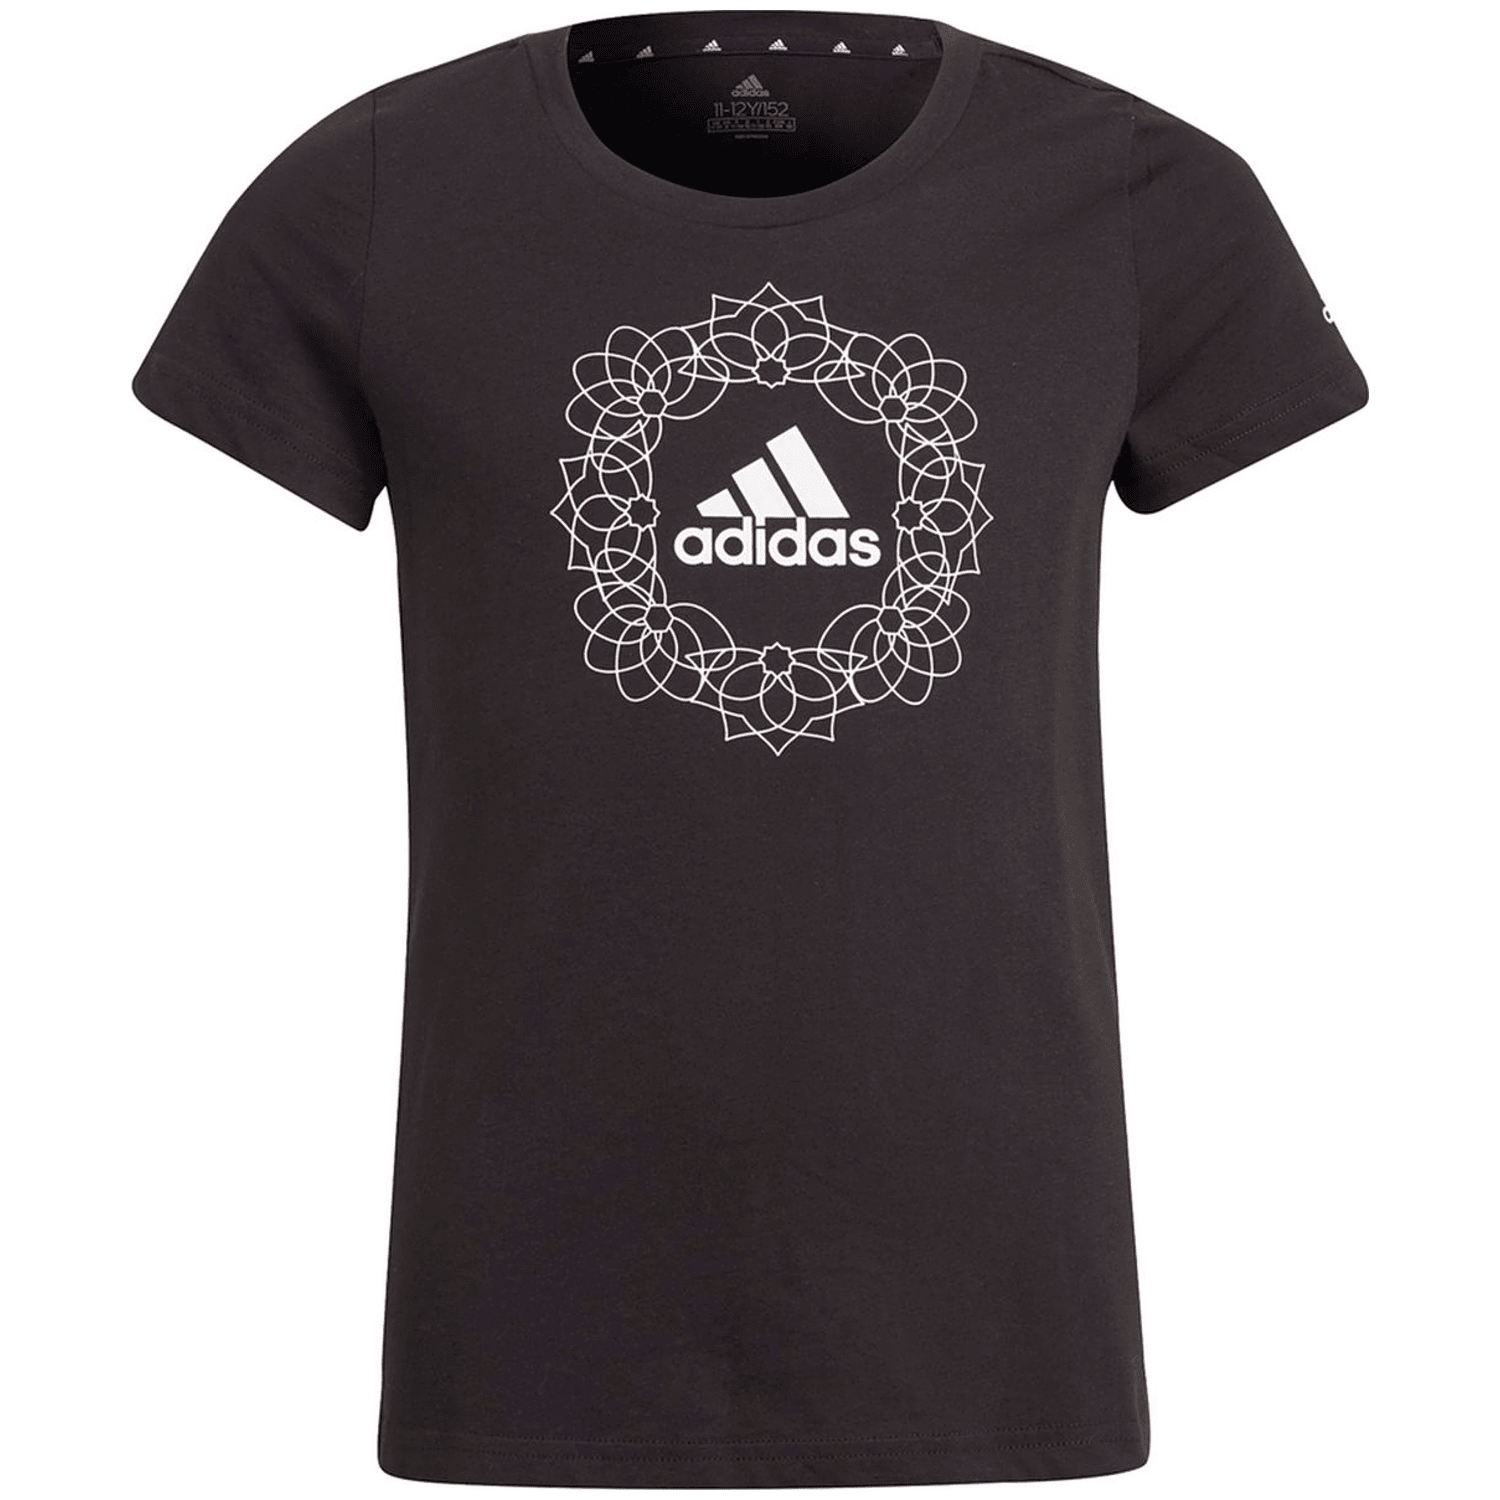 Adidas Graphic T-Shirt Mädchen